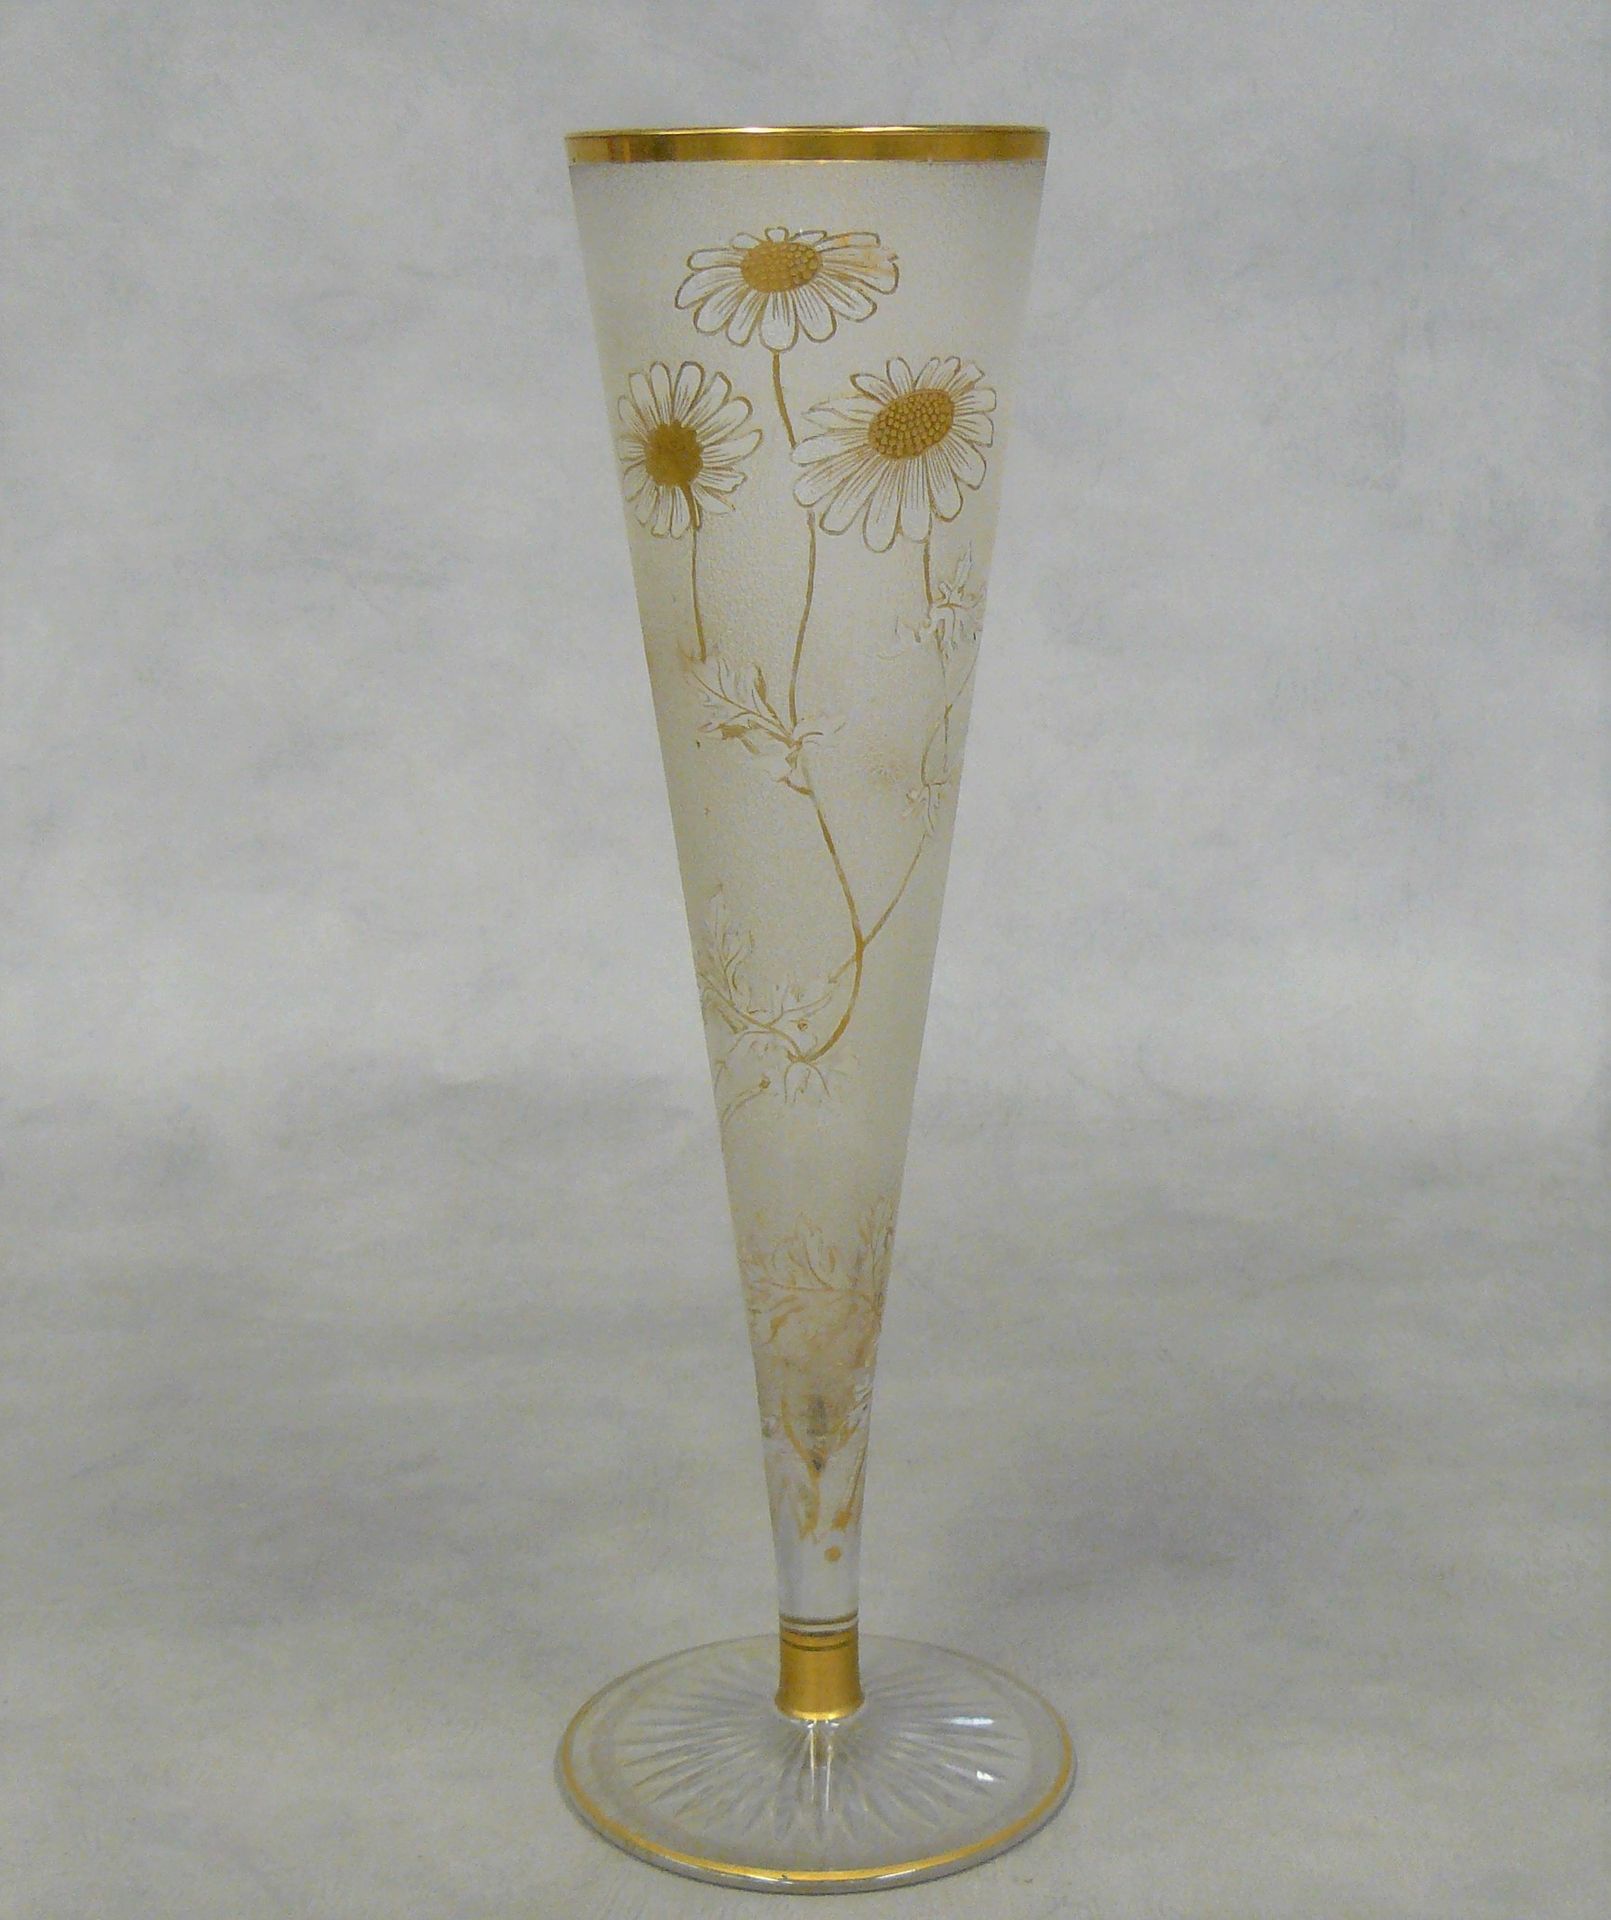 Null jarrón cónico de vidrio esmerilado con decoración floral dorada - H 35 cm